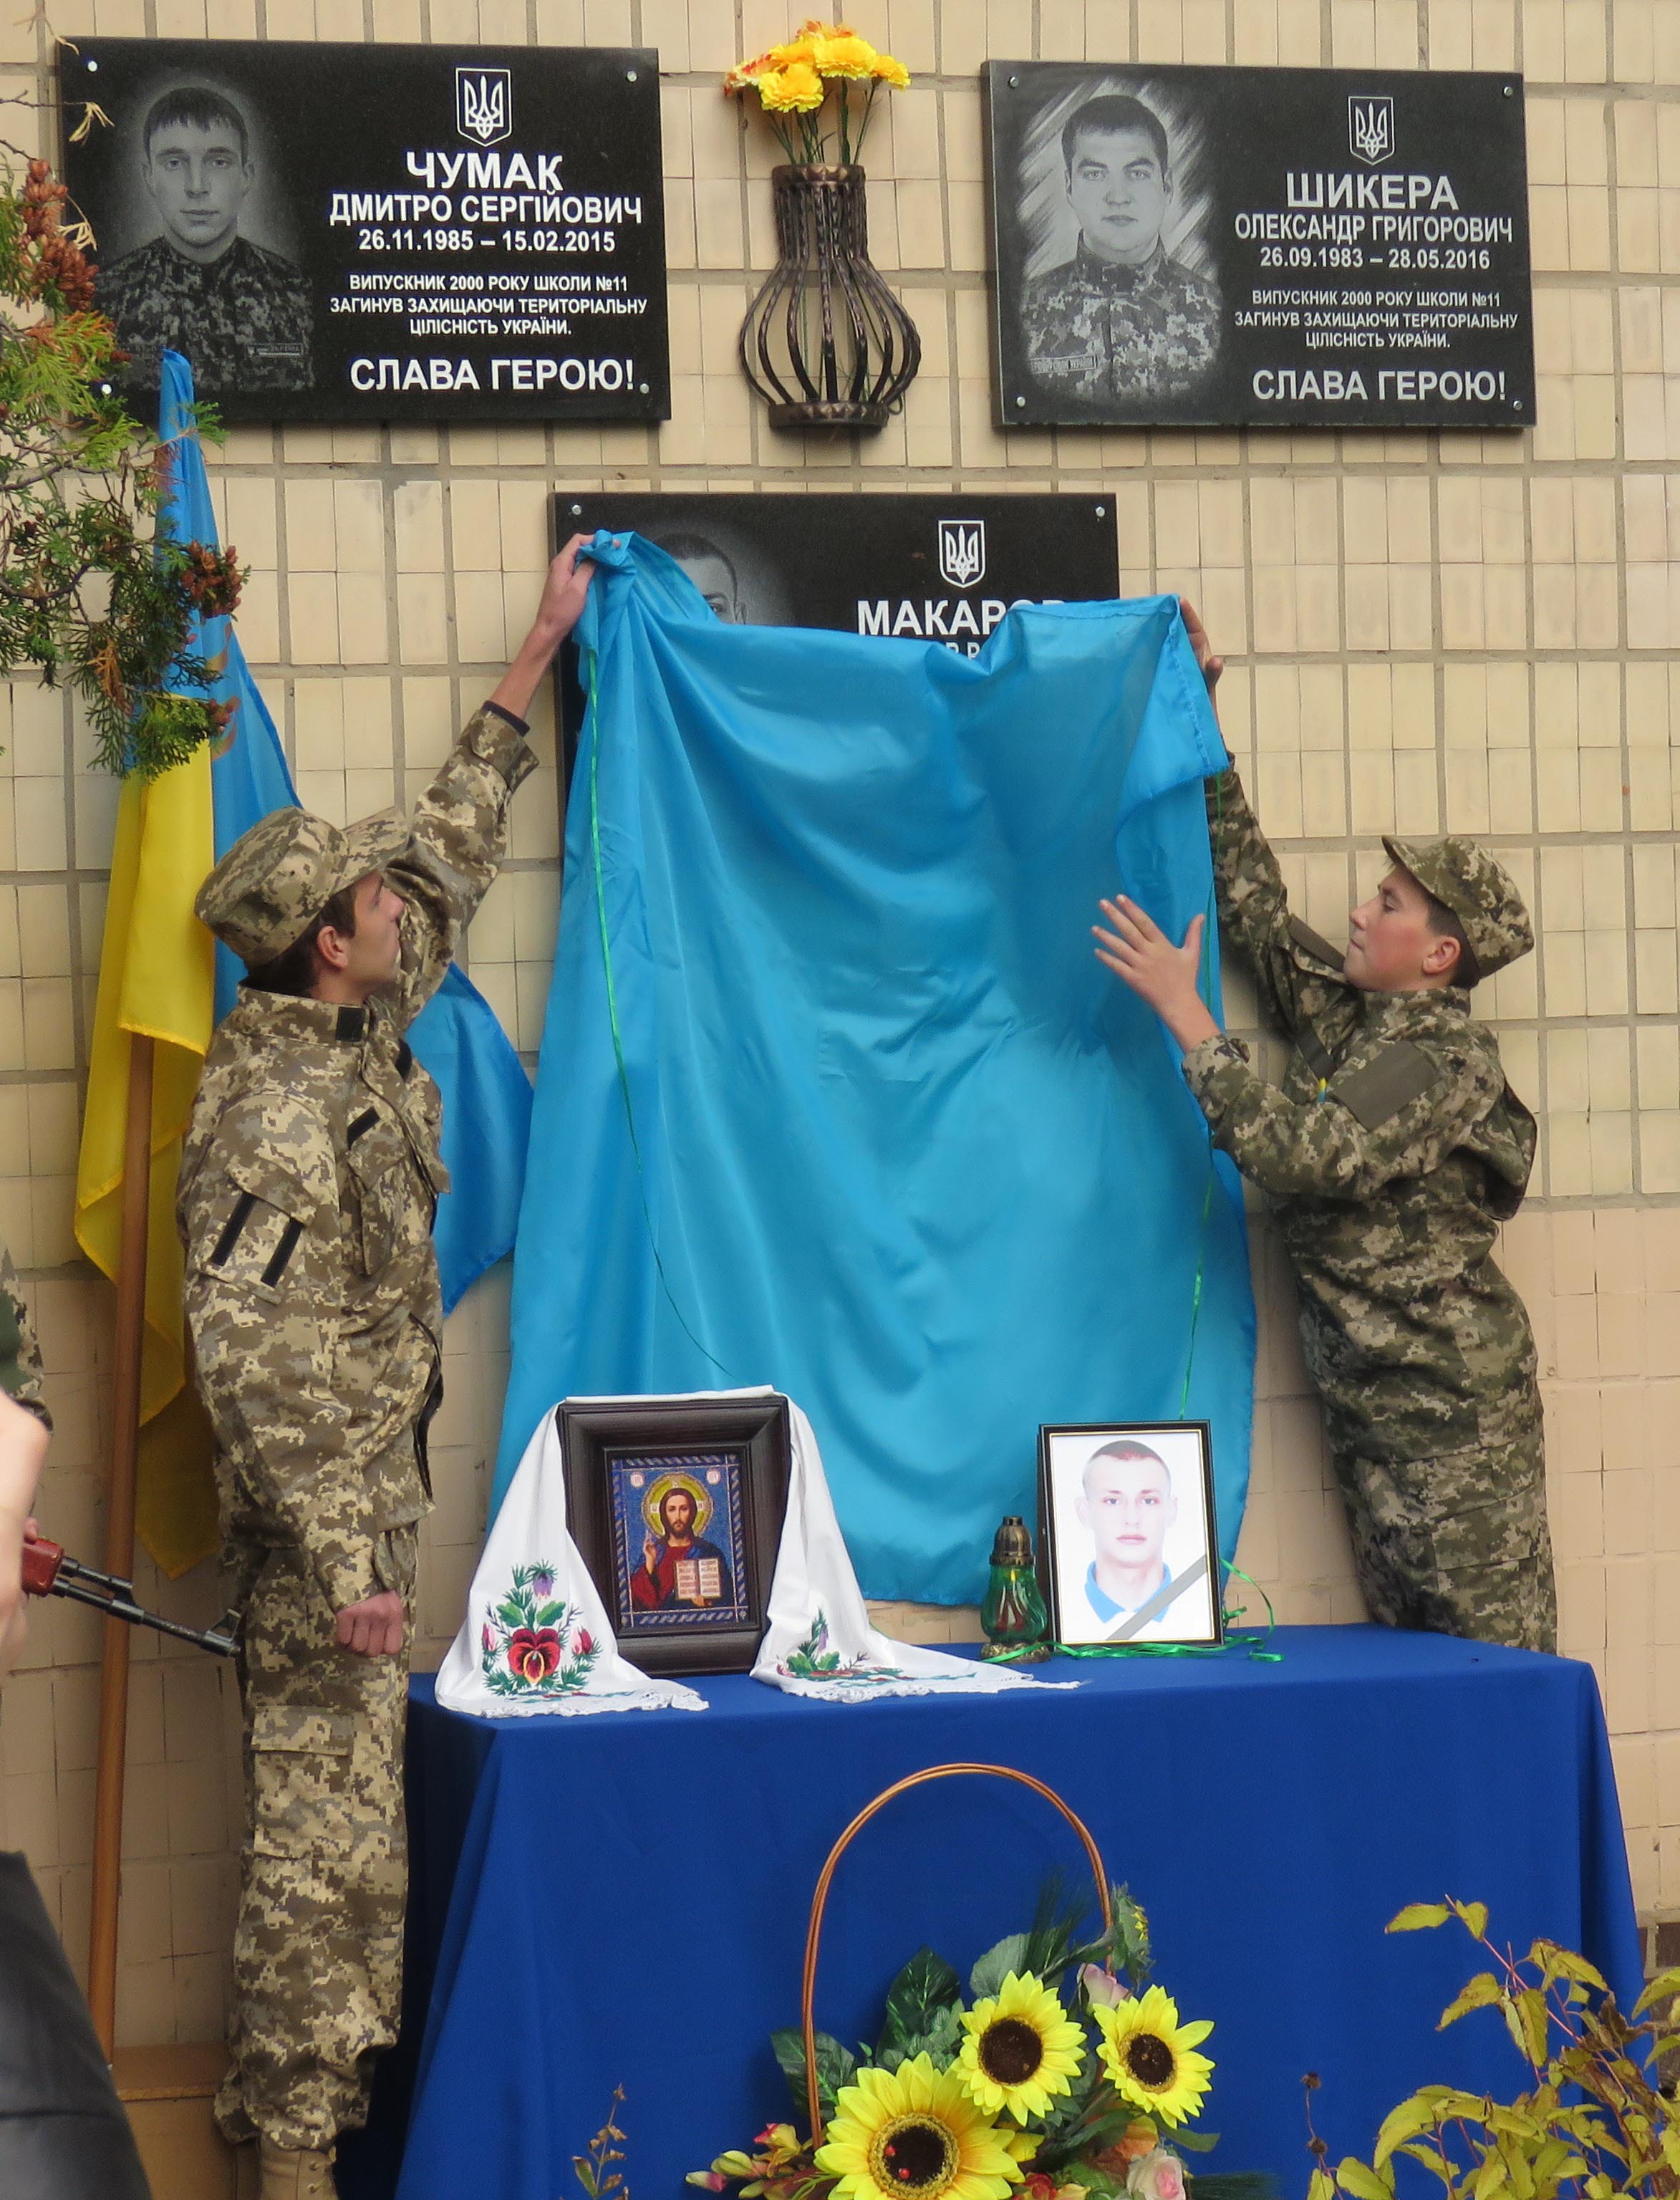 Урочисто відкрито меморіальну дошку на честь Владислава Макарова, який загинув під час бойових дій у зоні АТО